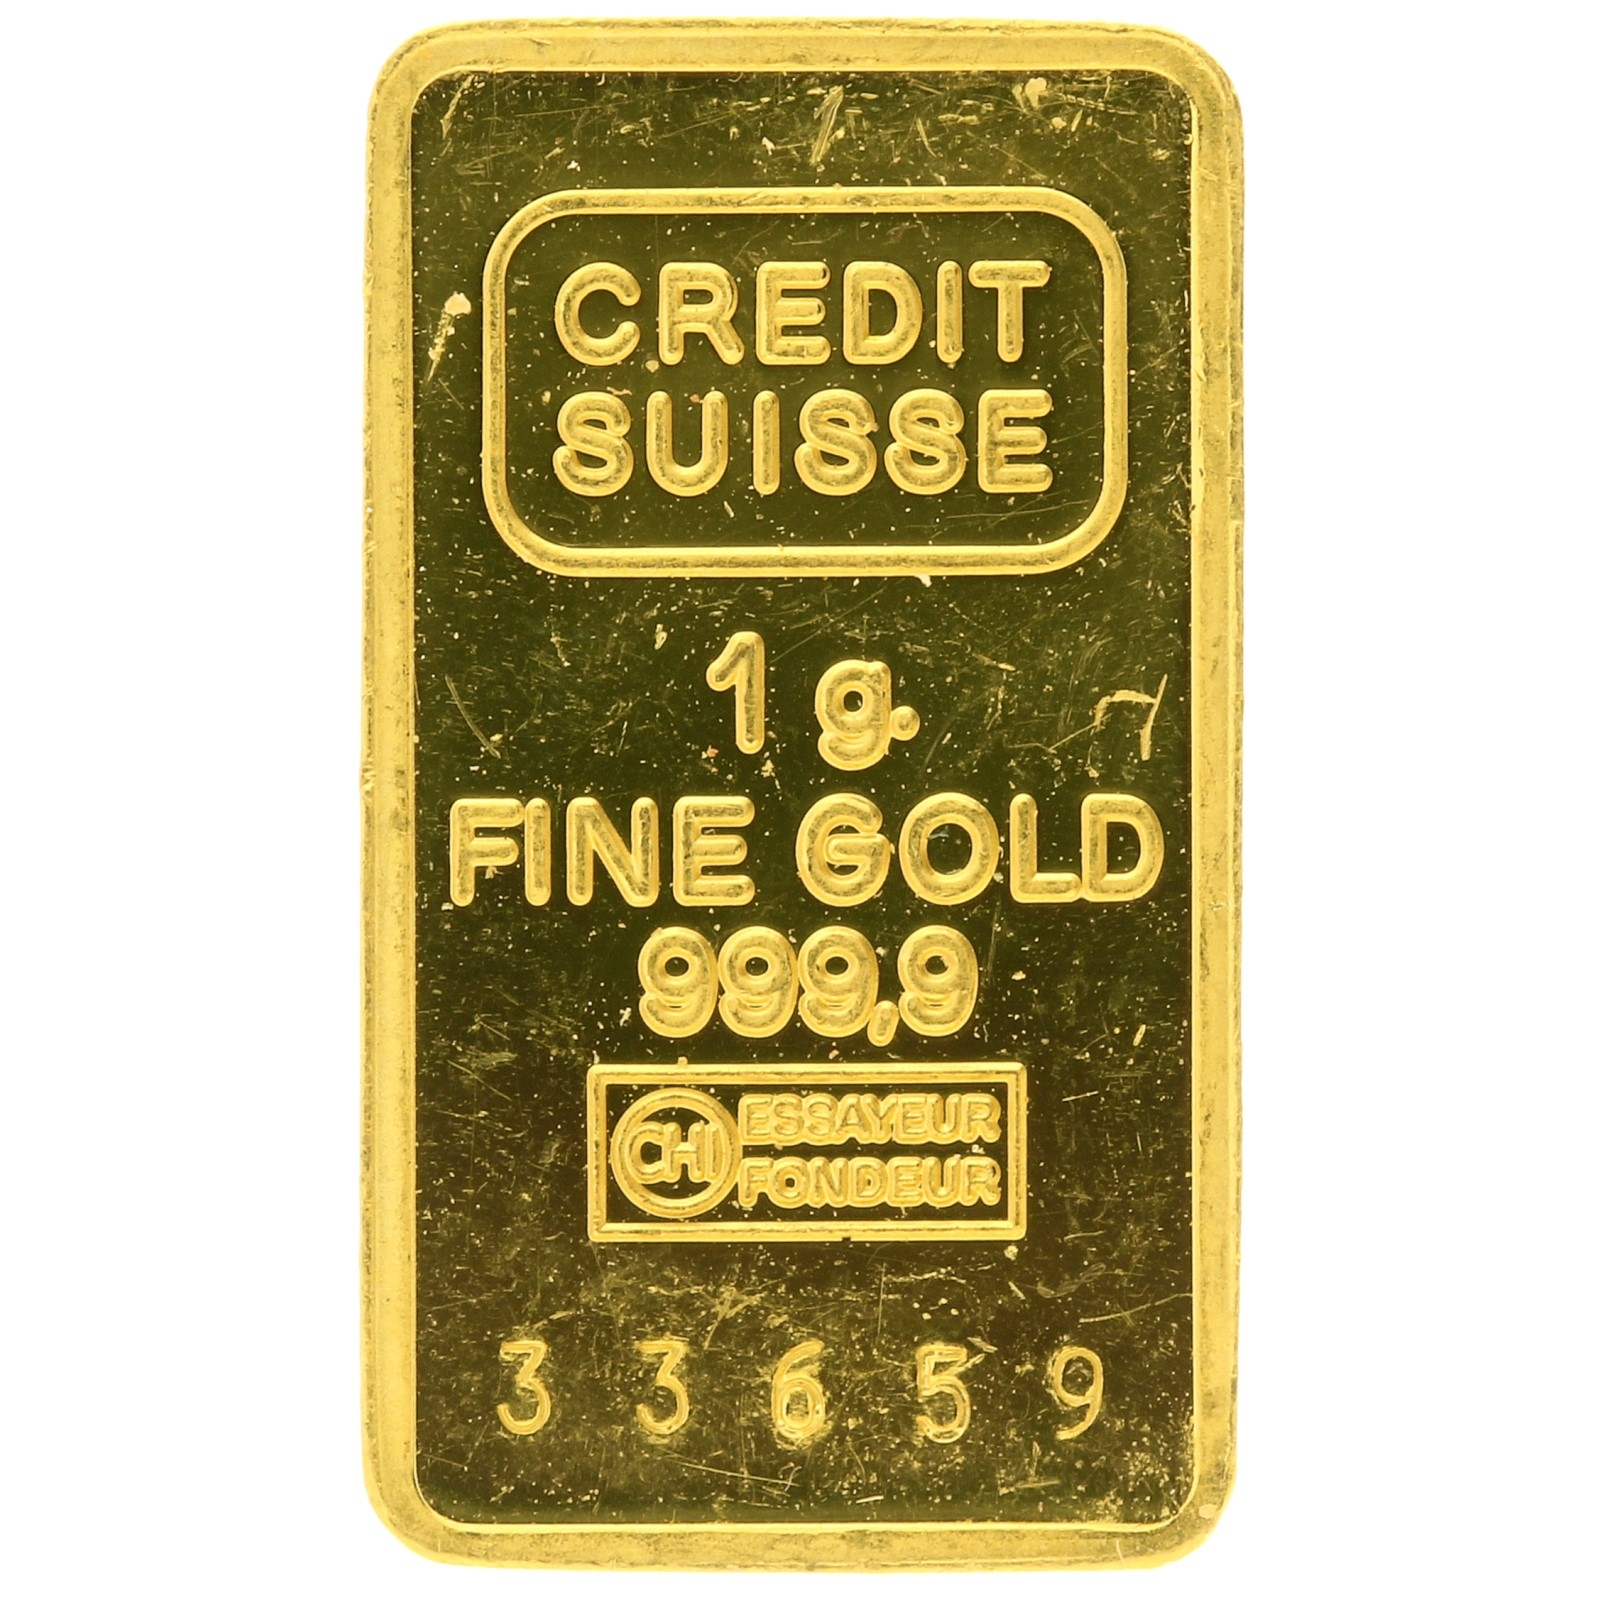 Credit Suisse - 1 gram - fine gold - bar 